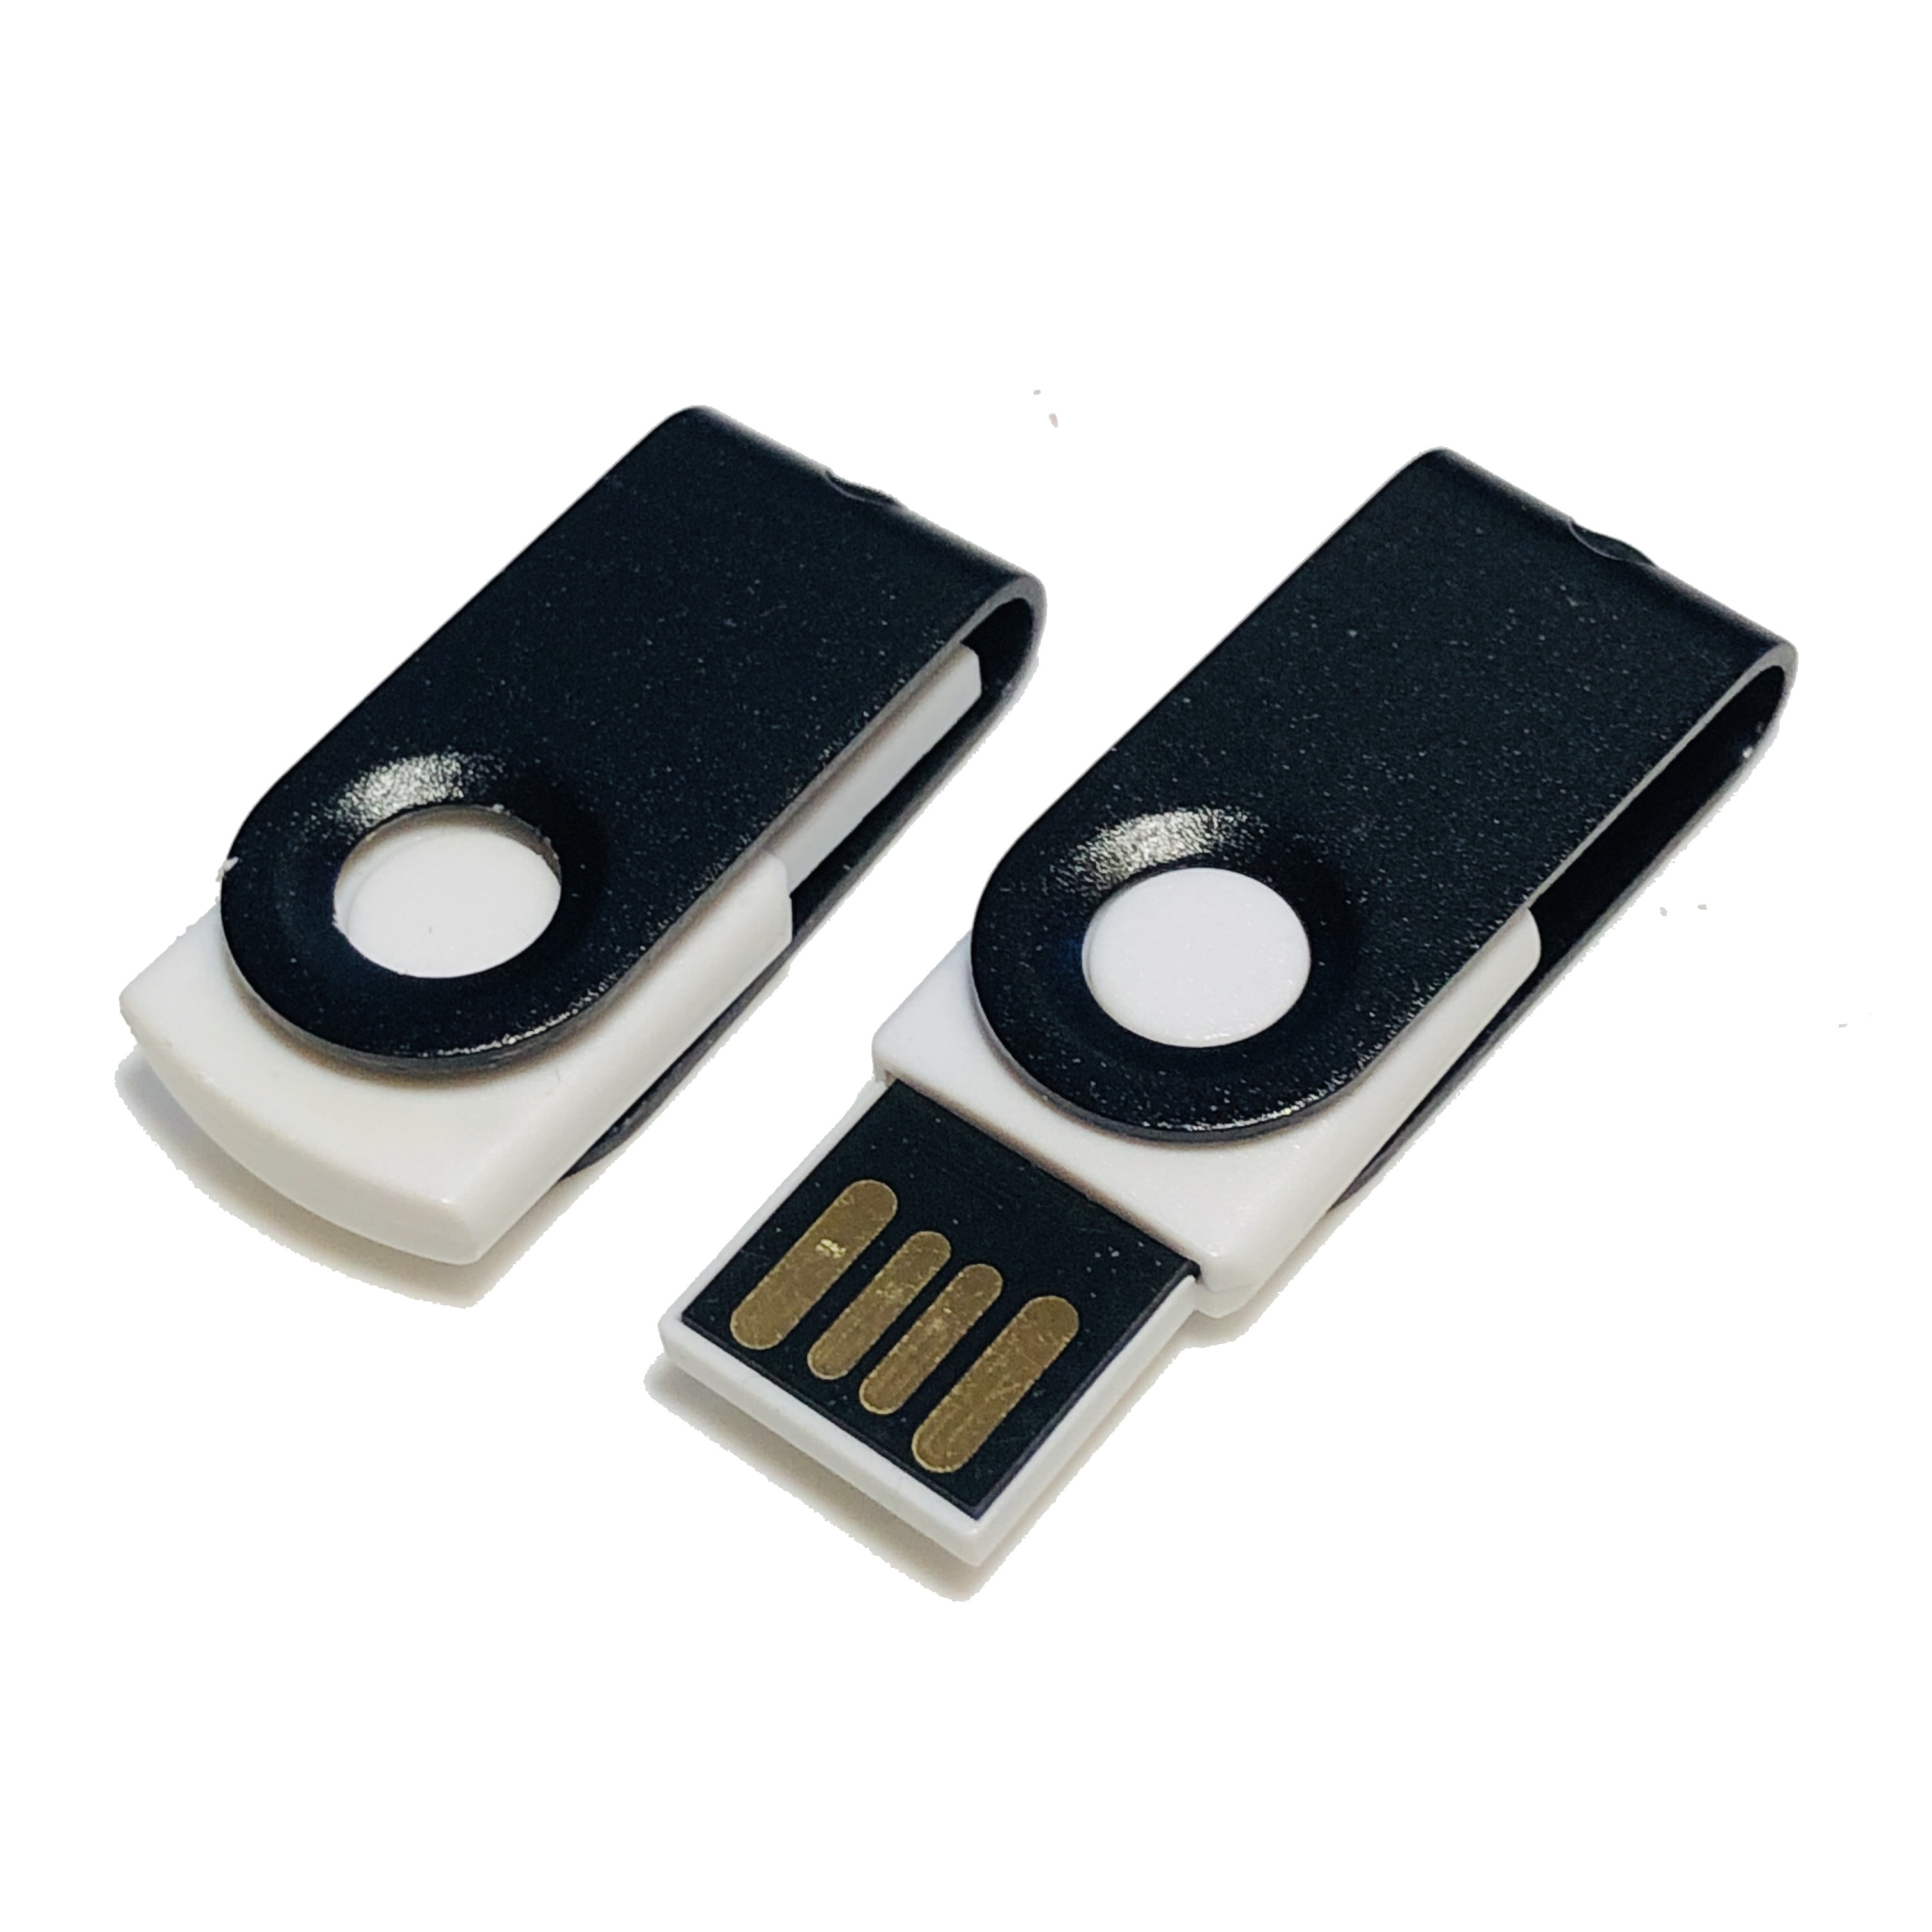 ® GERMANY MINI-SWIVEL GB) 1 USB-Stick USB (Weiß-Schwarz,